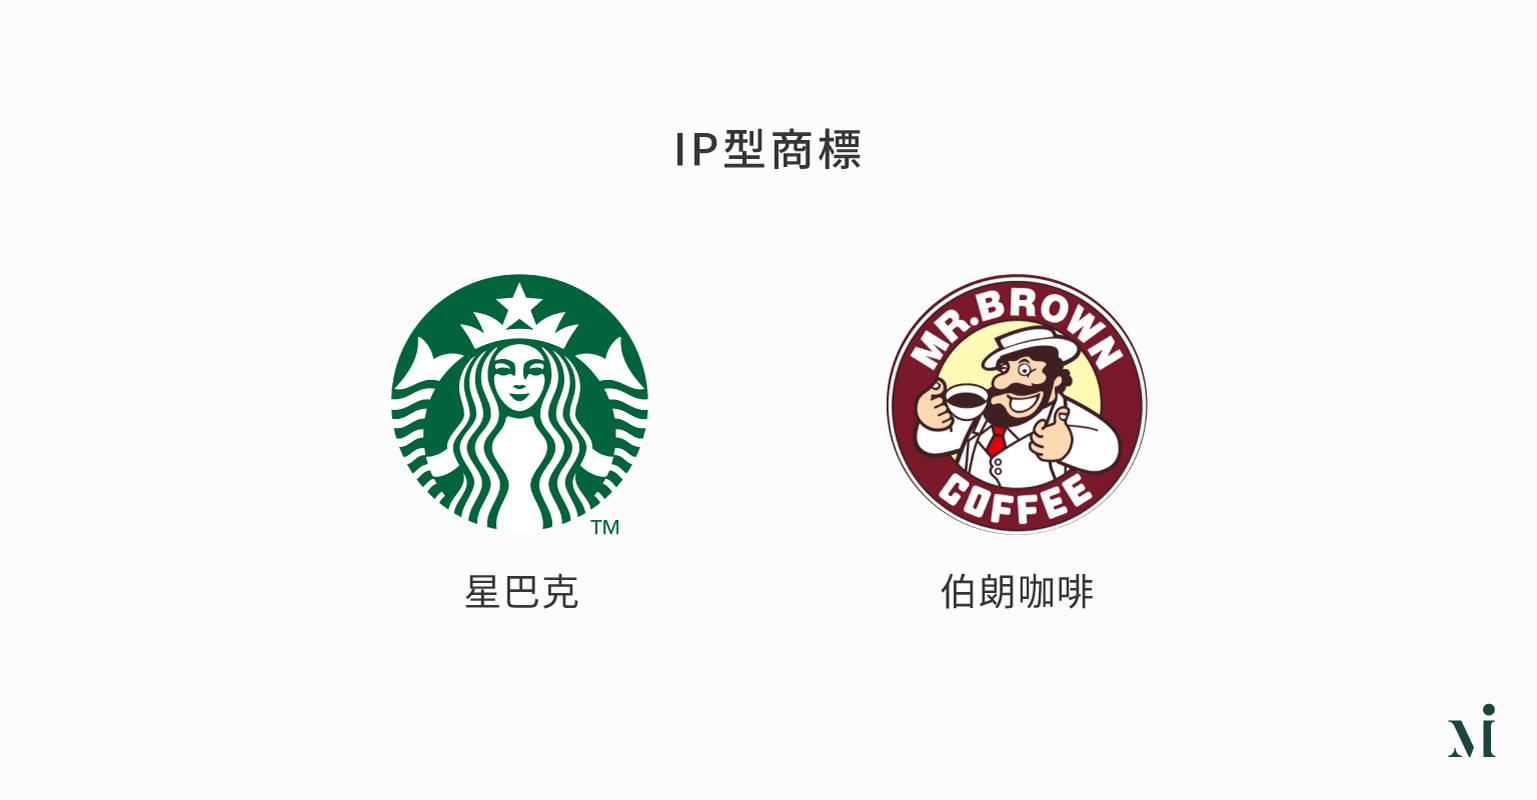 IP型LOGO參考：星巴克和伯朗咖啡